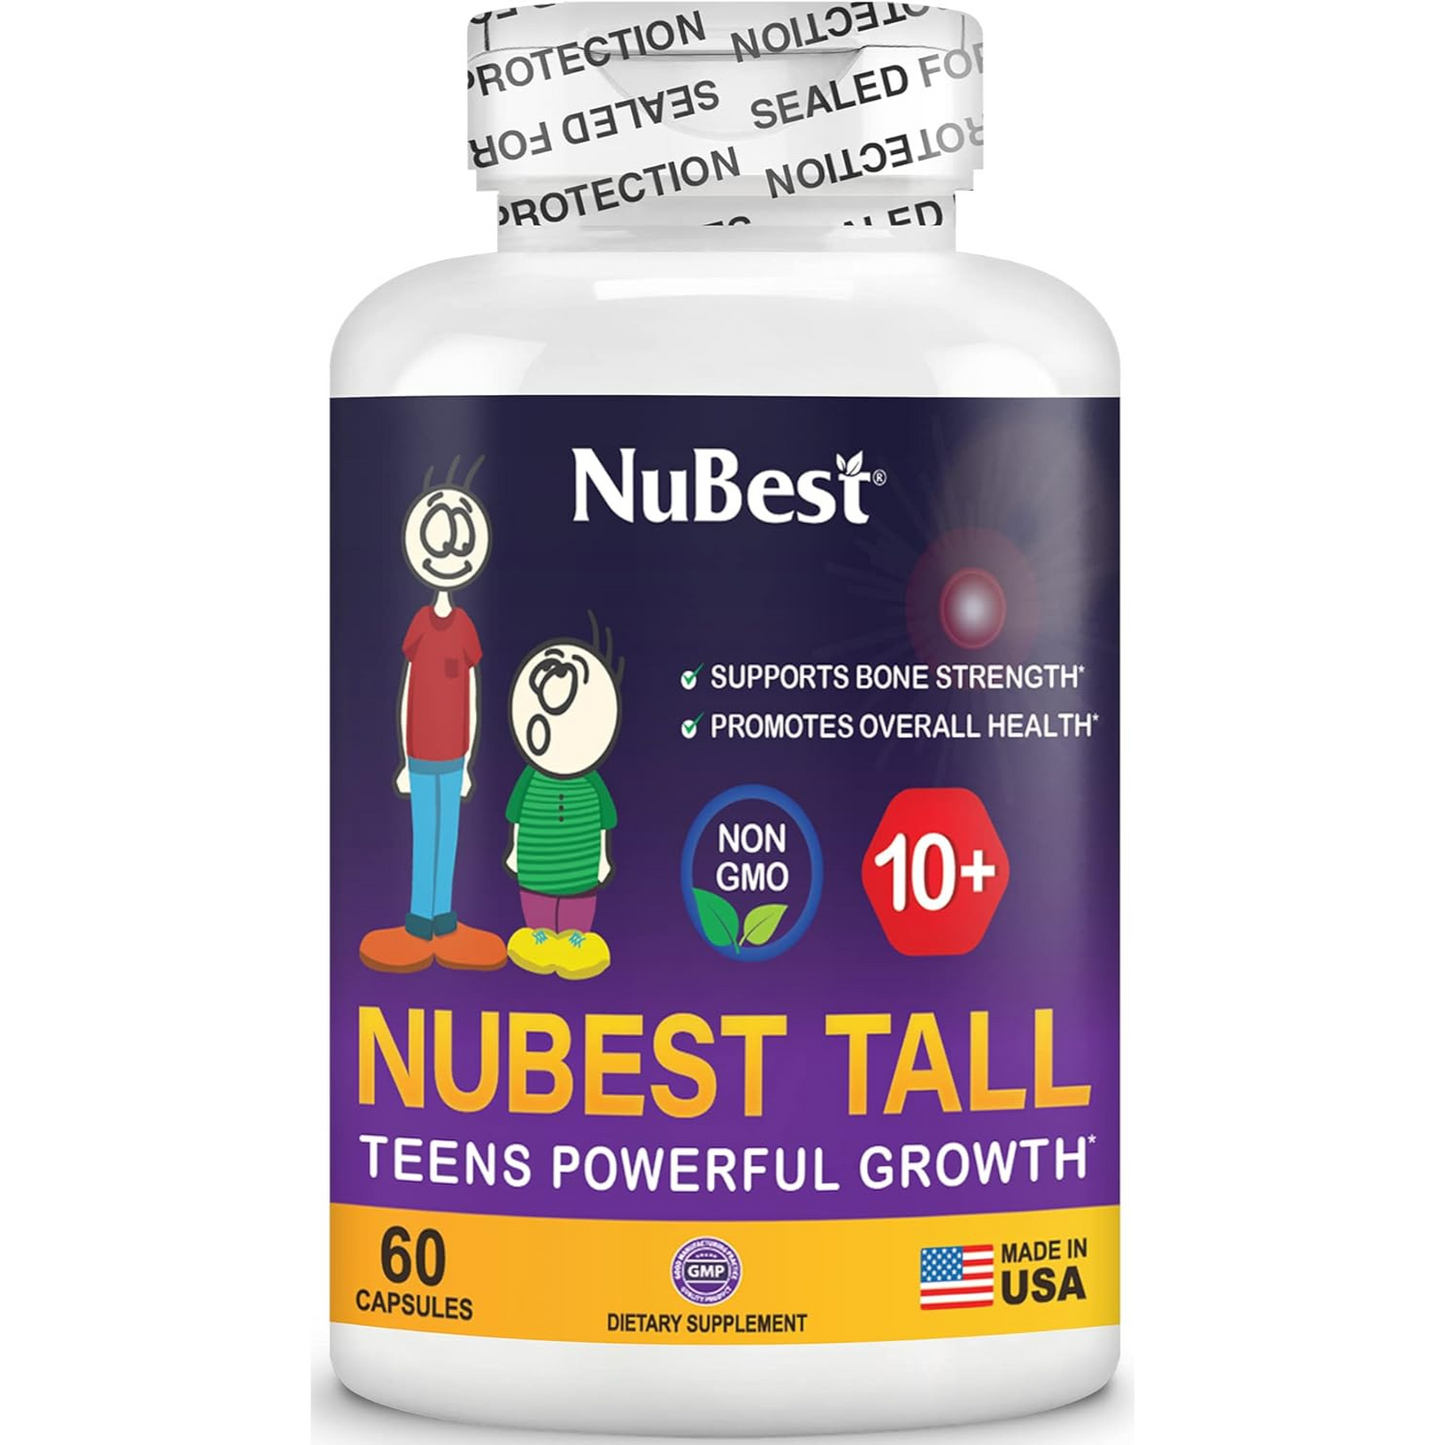 NuBest Tall 10+ - Fórmula de fuerza ósea, inmunidad mejorada y salud general +10 años